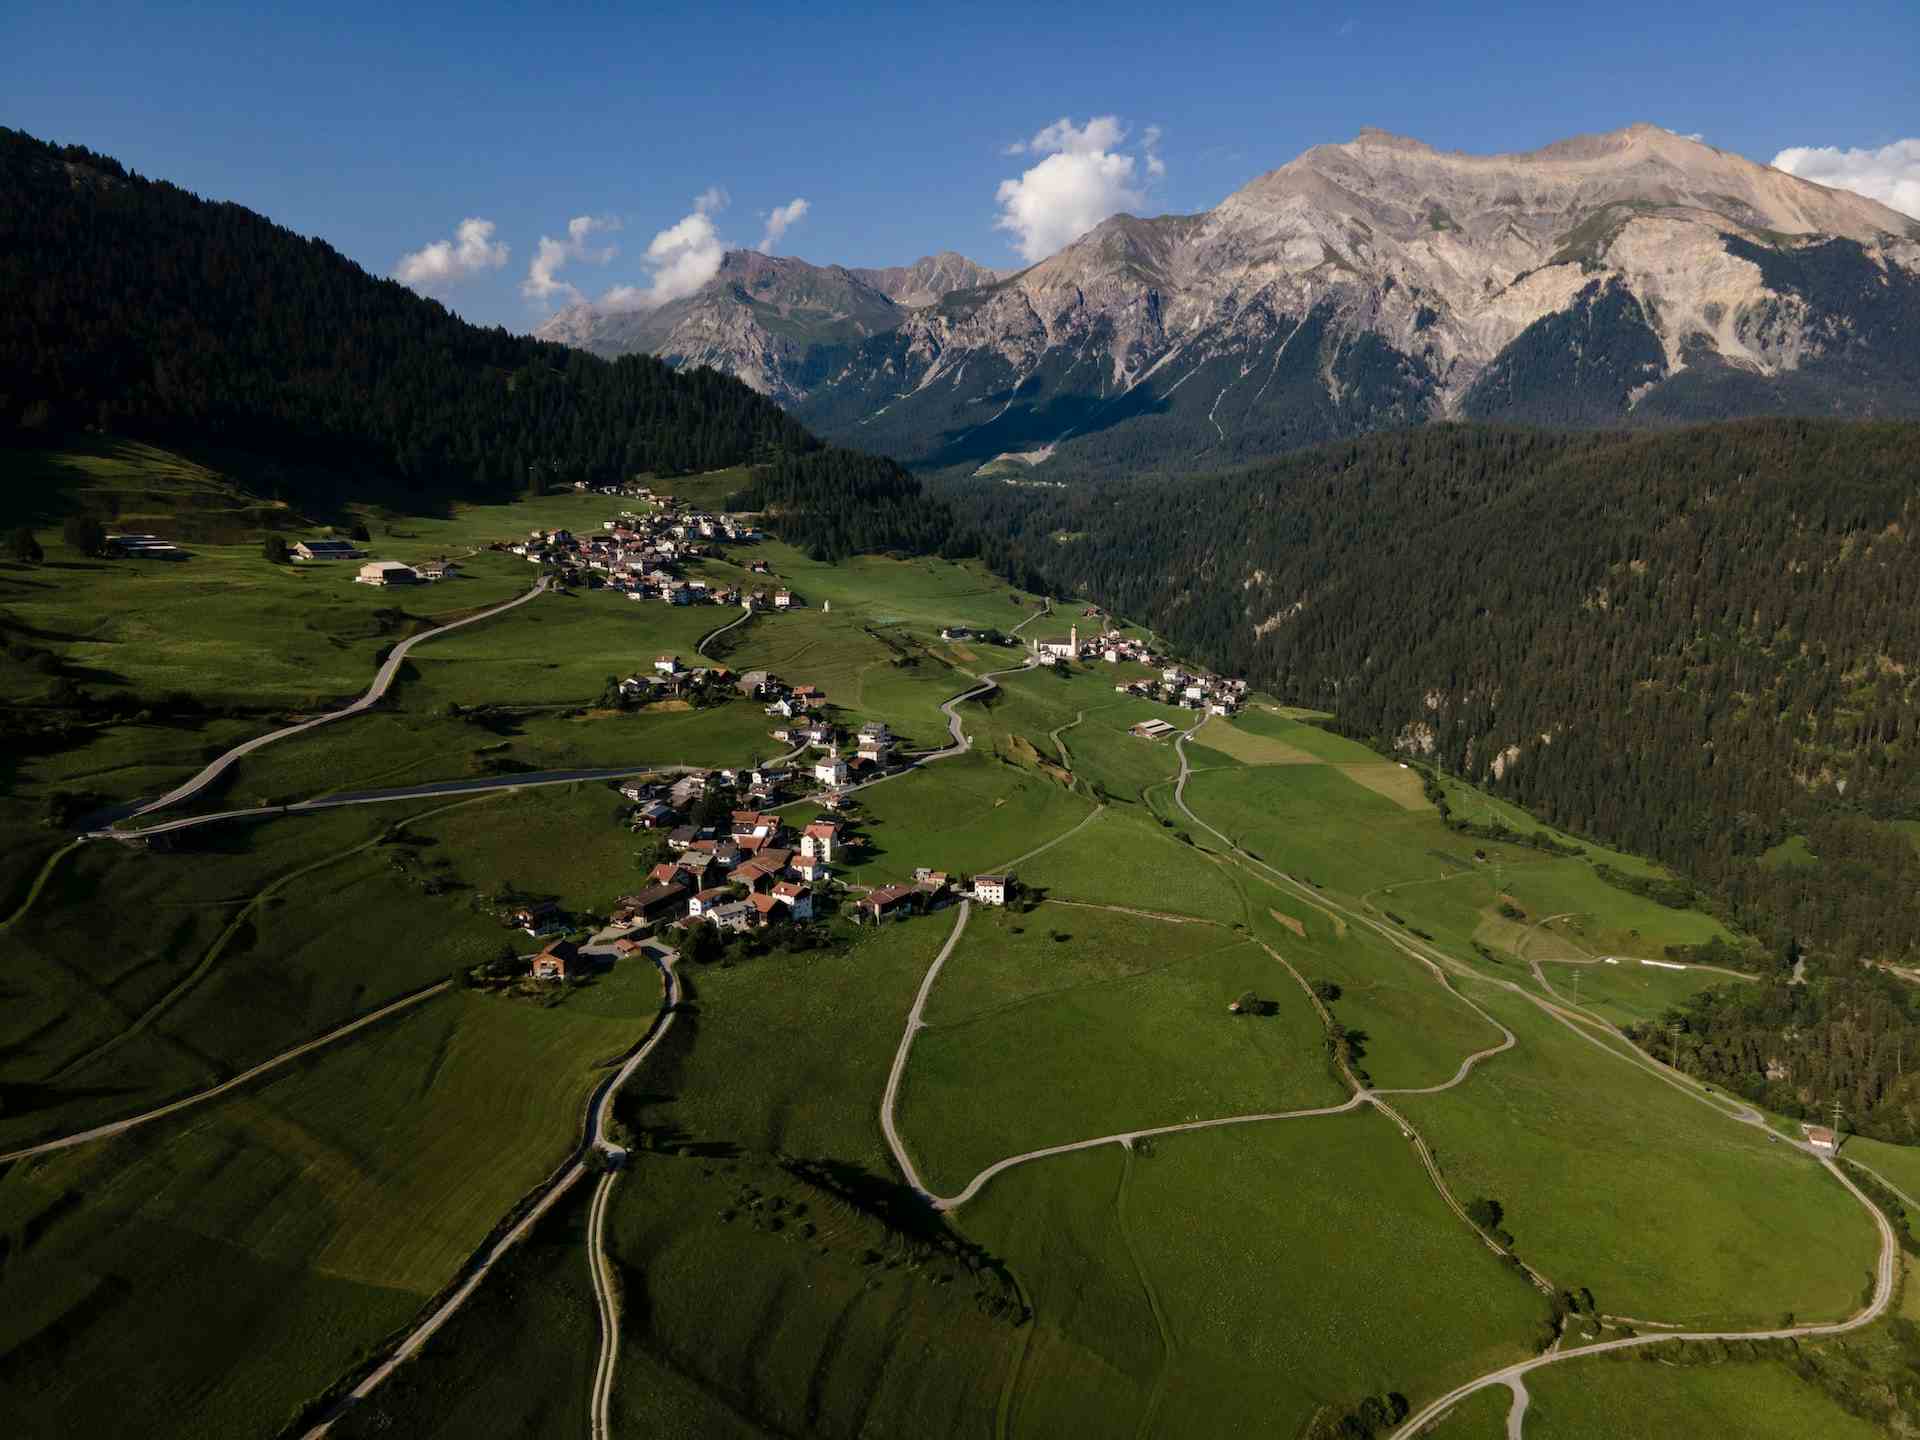 Spichergada-Turra, producer in Thalkirch canton of Graubünden in Switzerland